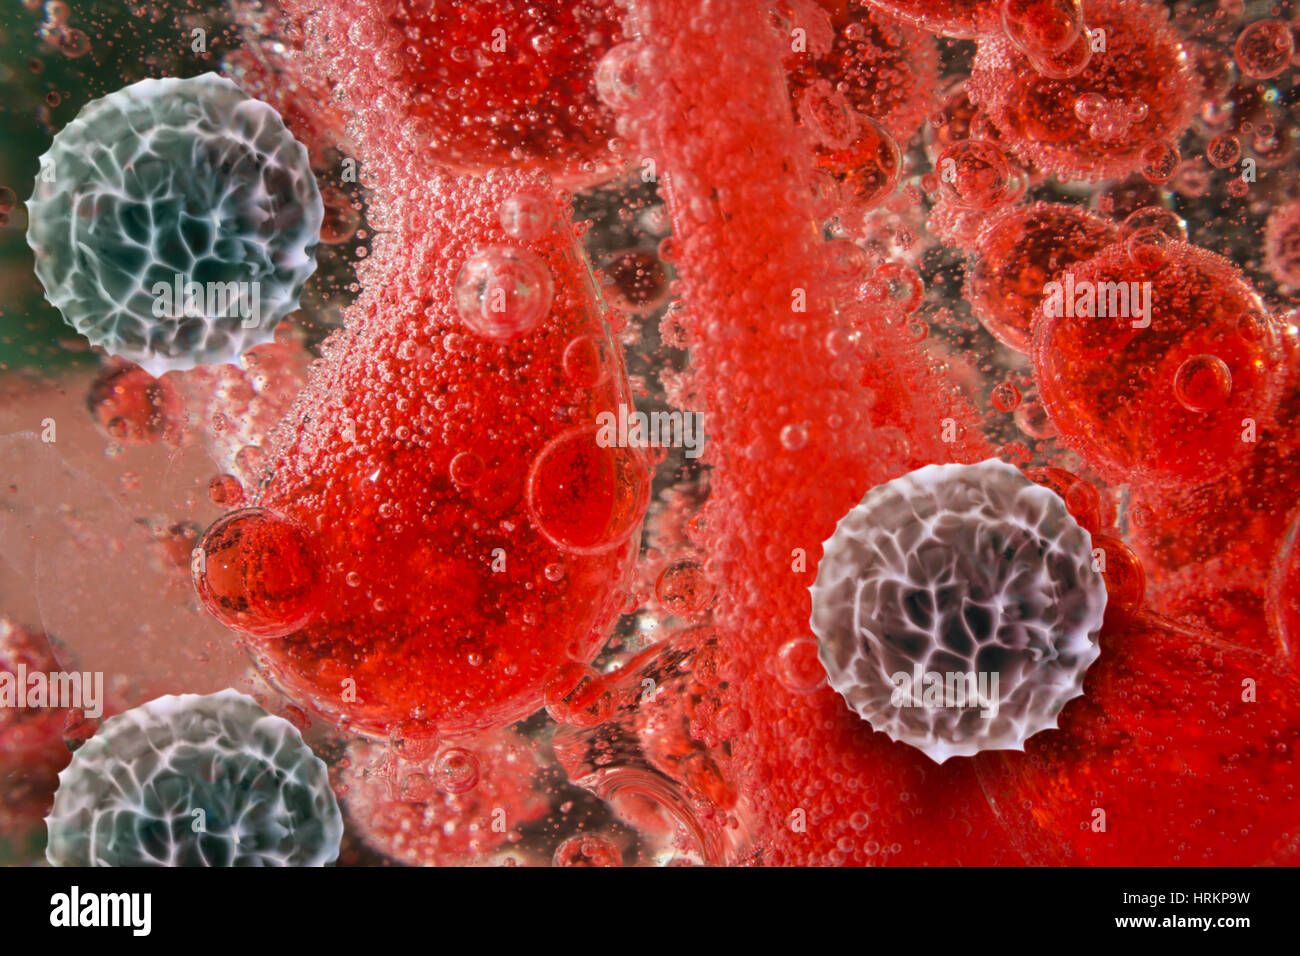 Salute dell'uomo di colore rosso e bianco bloodcells in macro immagine della scienza Foto Stock